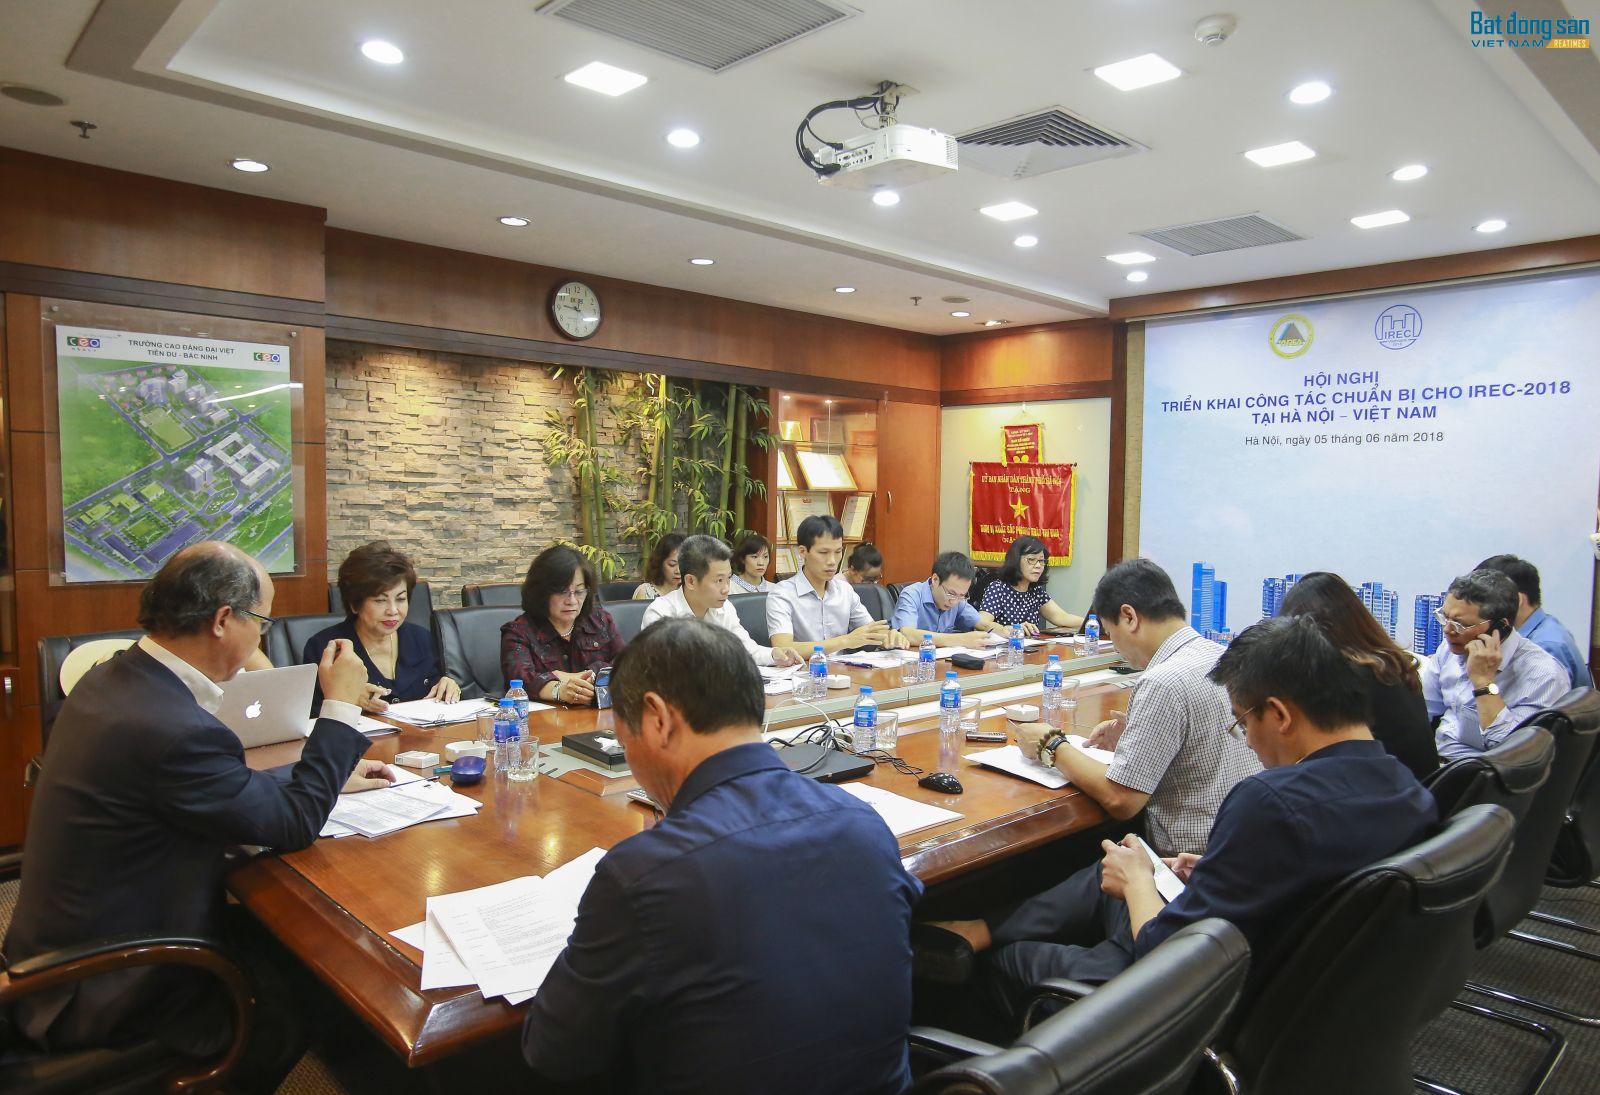 Hội nghị triển khai công tác chuẩn bị cho IREC - 2018 tại Hà Nội - Việt Nam